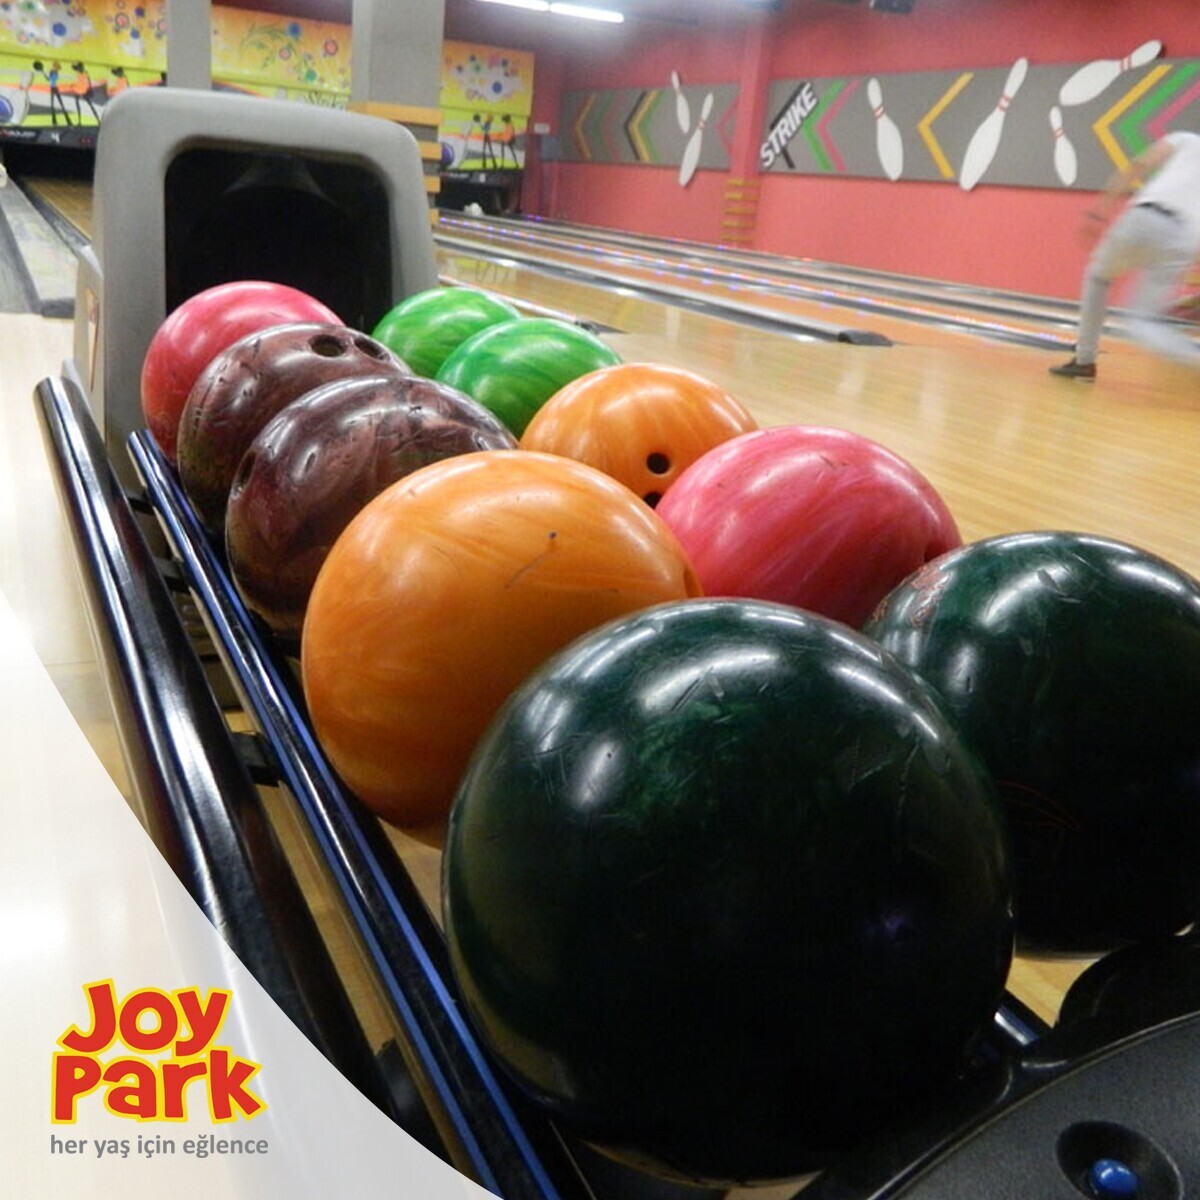 JoyPark Teraspark AVM Bowling Oyun Biletleri